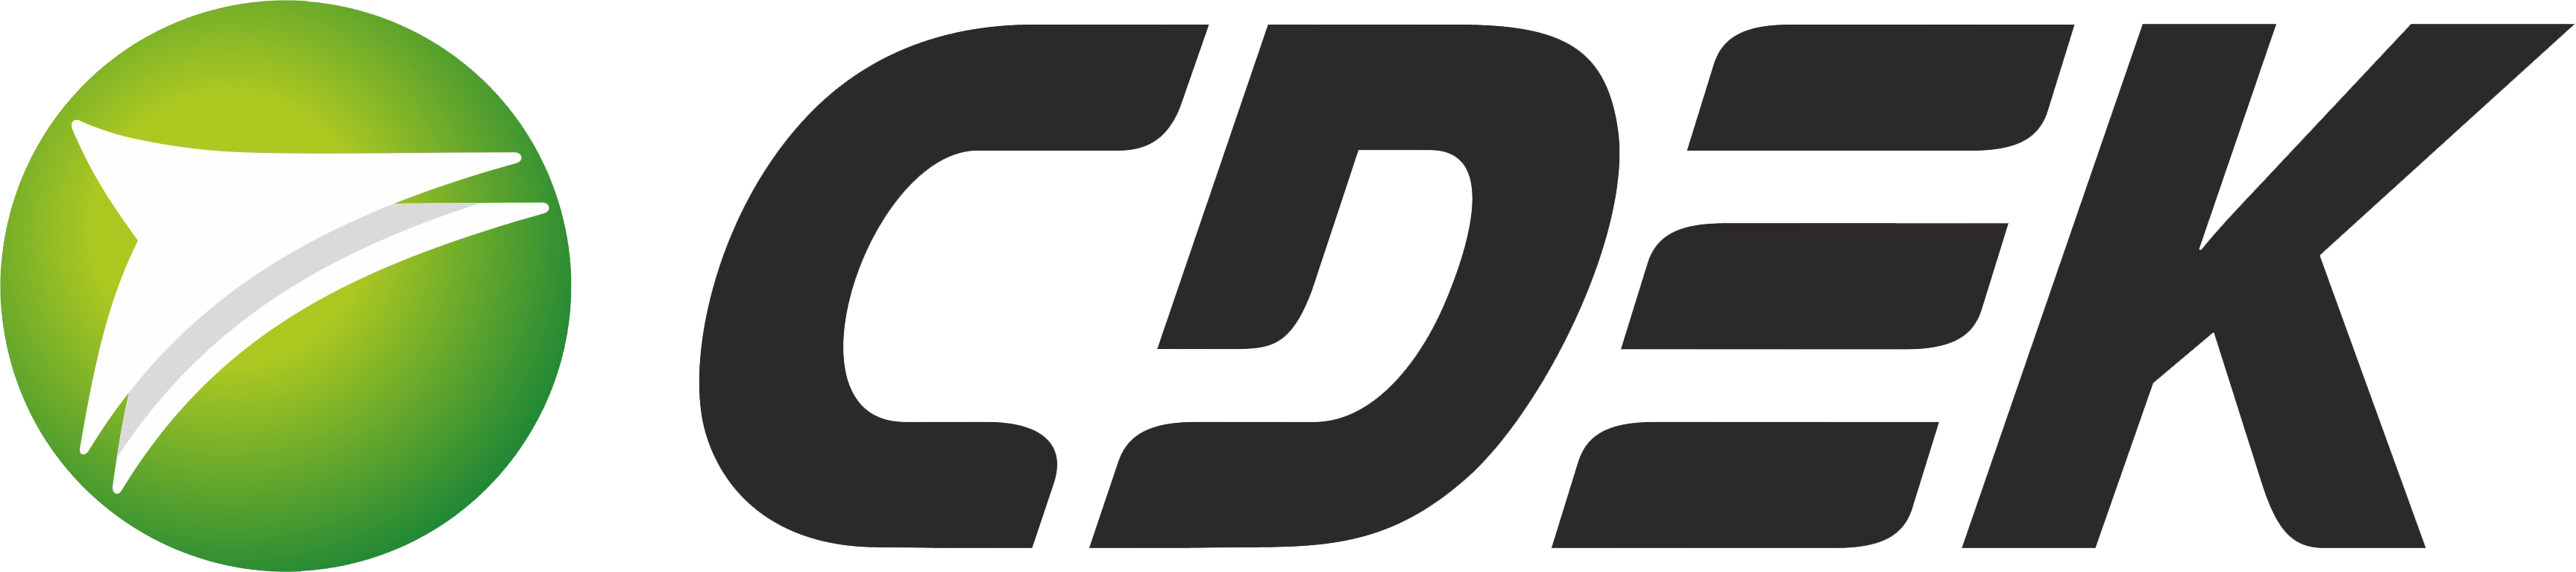 Сейвформ. ТК СДЭК логотип. СДЭК логотип вектор. Транспортная компания СДЭК. СДЭК логотип прозрачный.